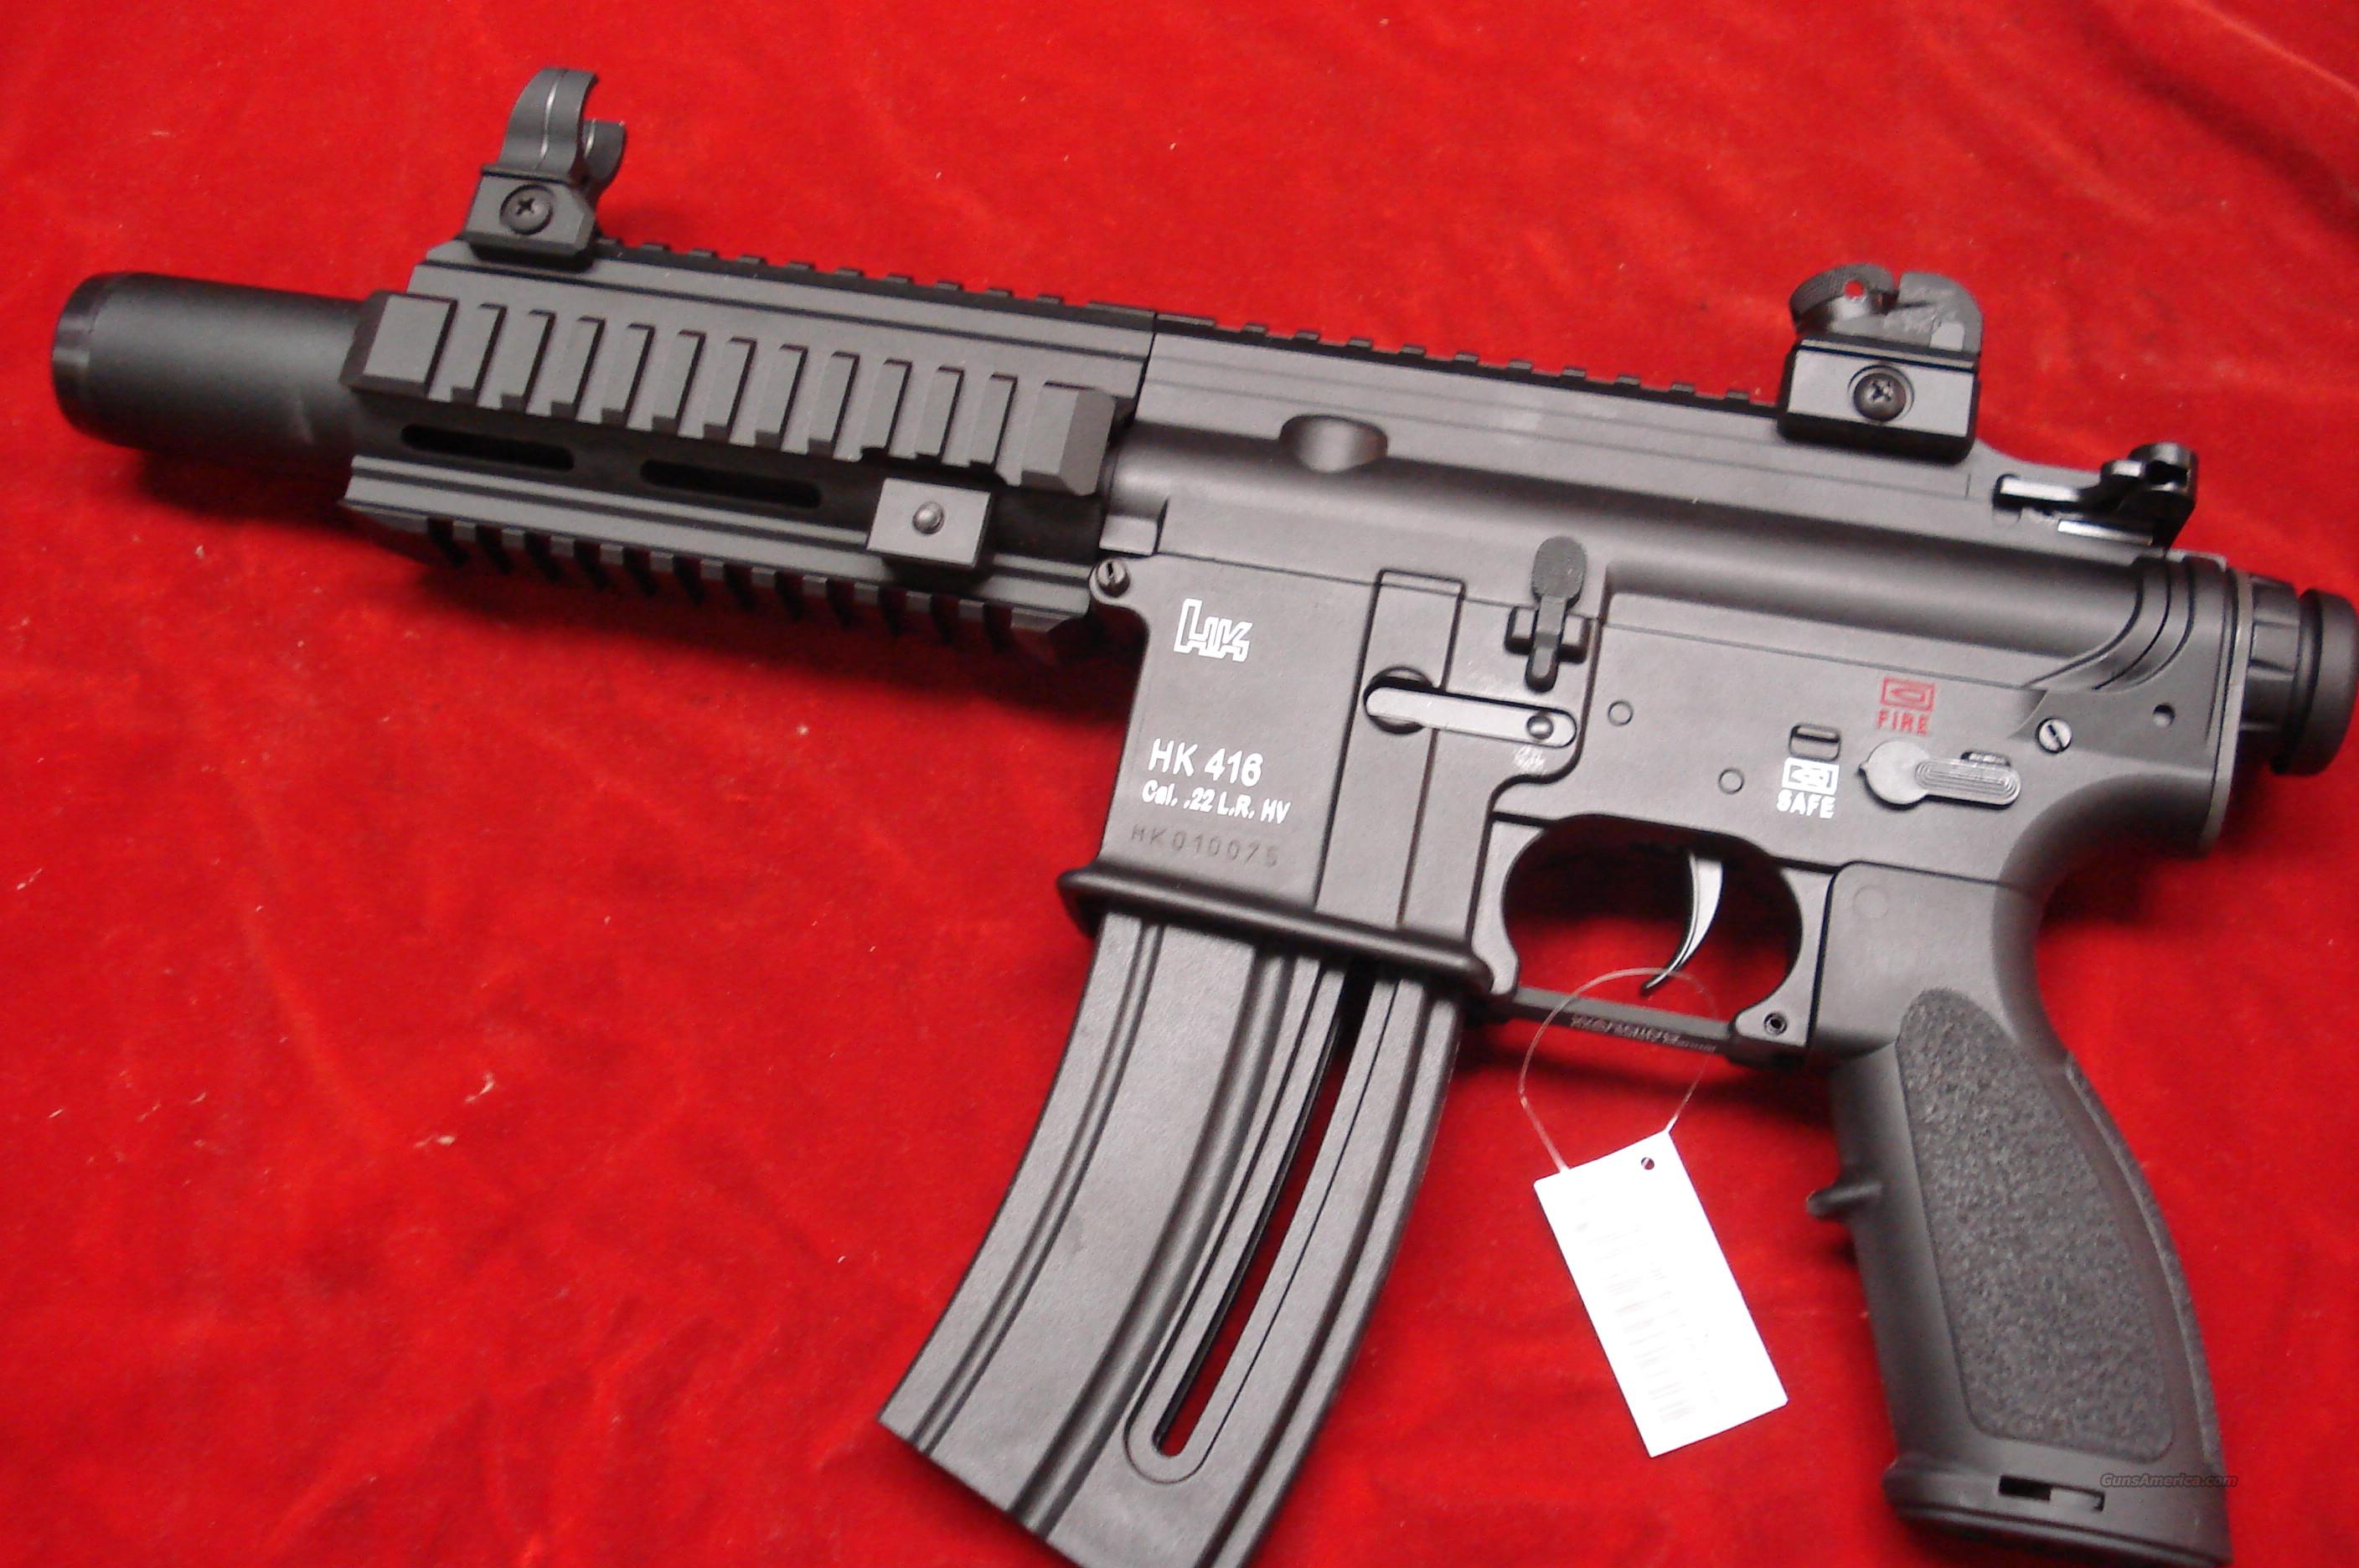 hk-416-22cal-pistol-new-for-sale-at-gunsamerica-933163044